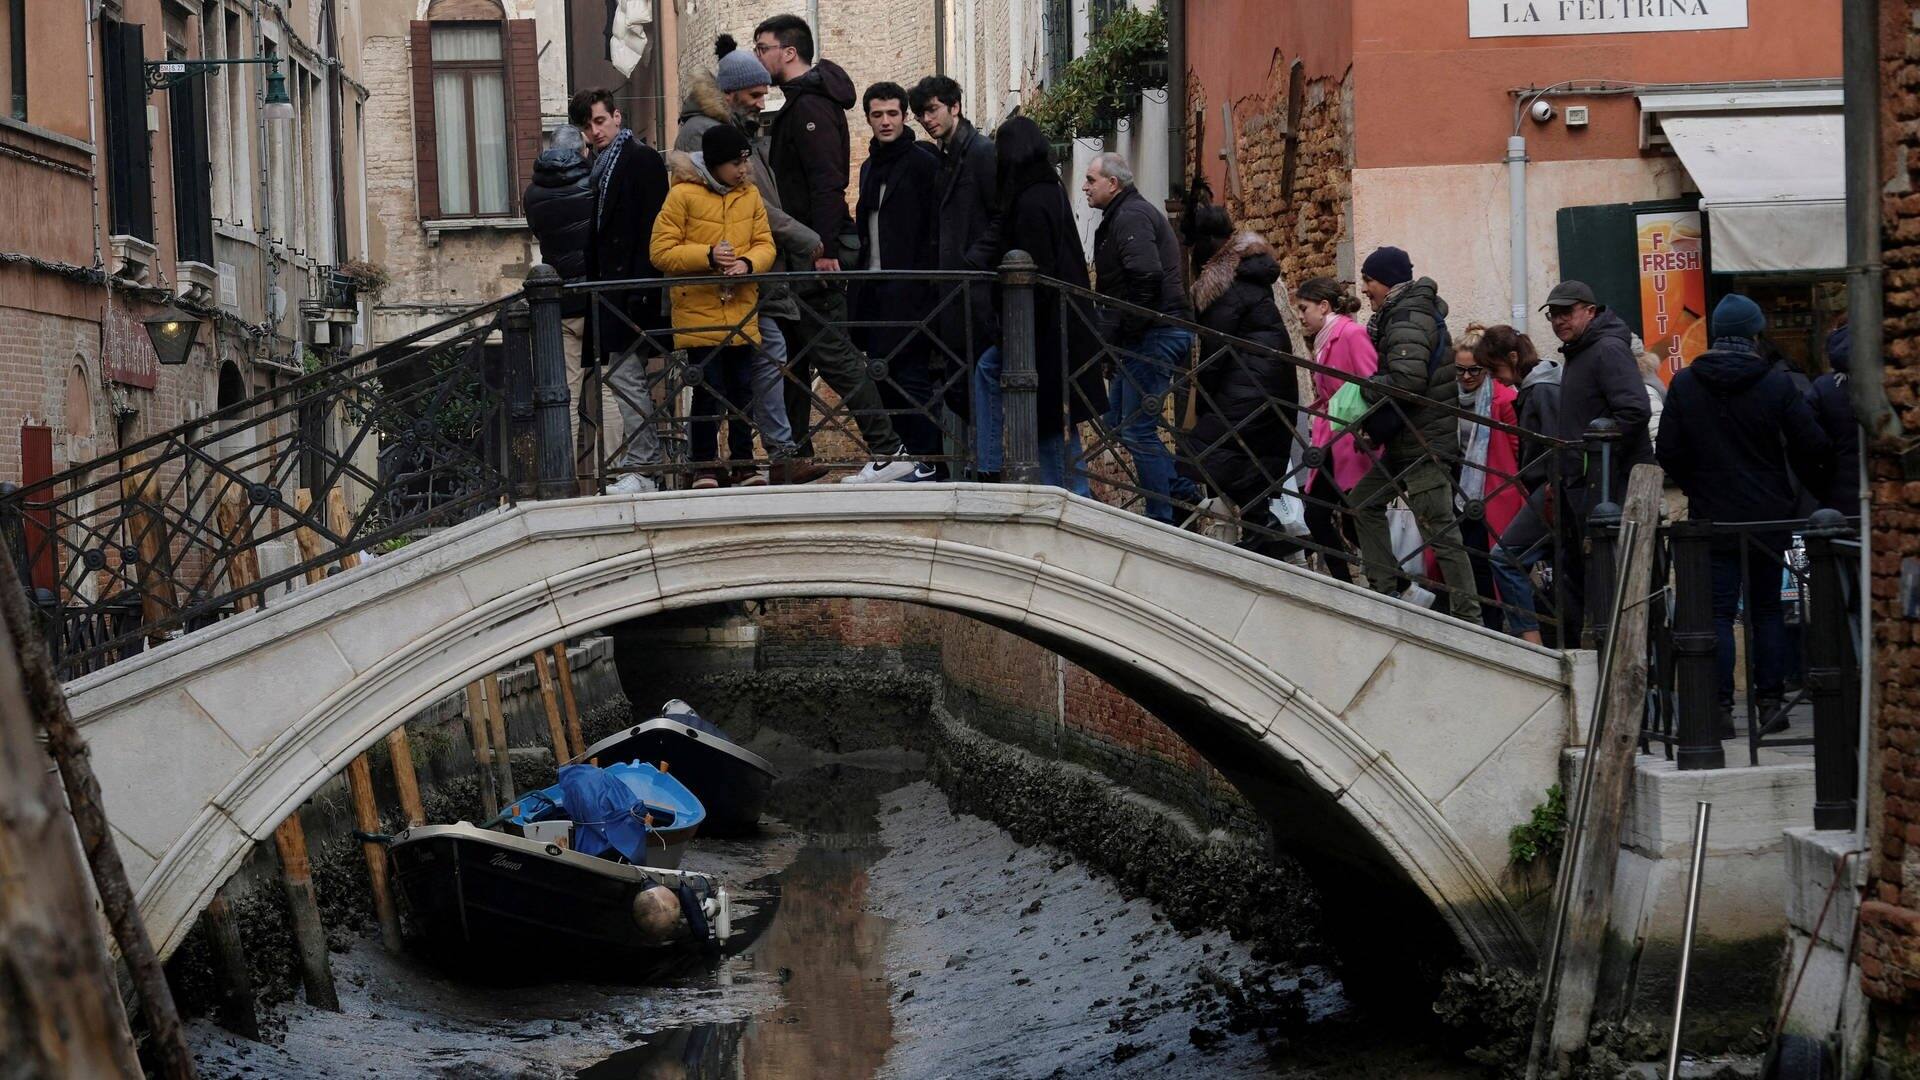 Menschen stehen auf einer Brücke in Venedig und schauen in einen Kanal, in dem sehr wenig Wasser ist (Foto: Reuters, REUTERS MAK)